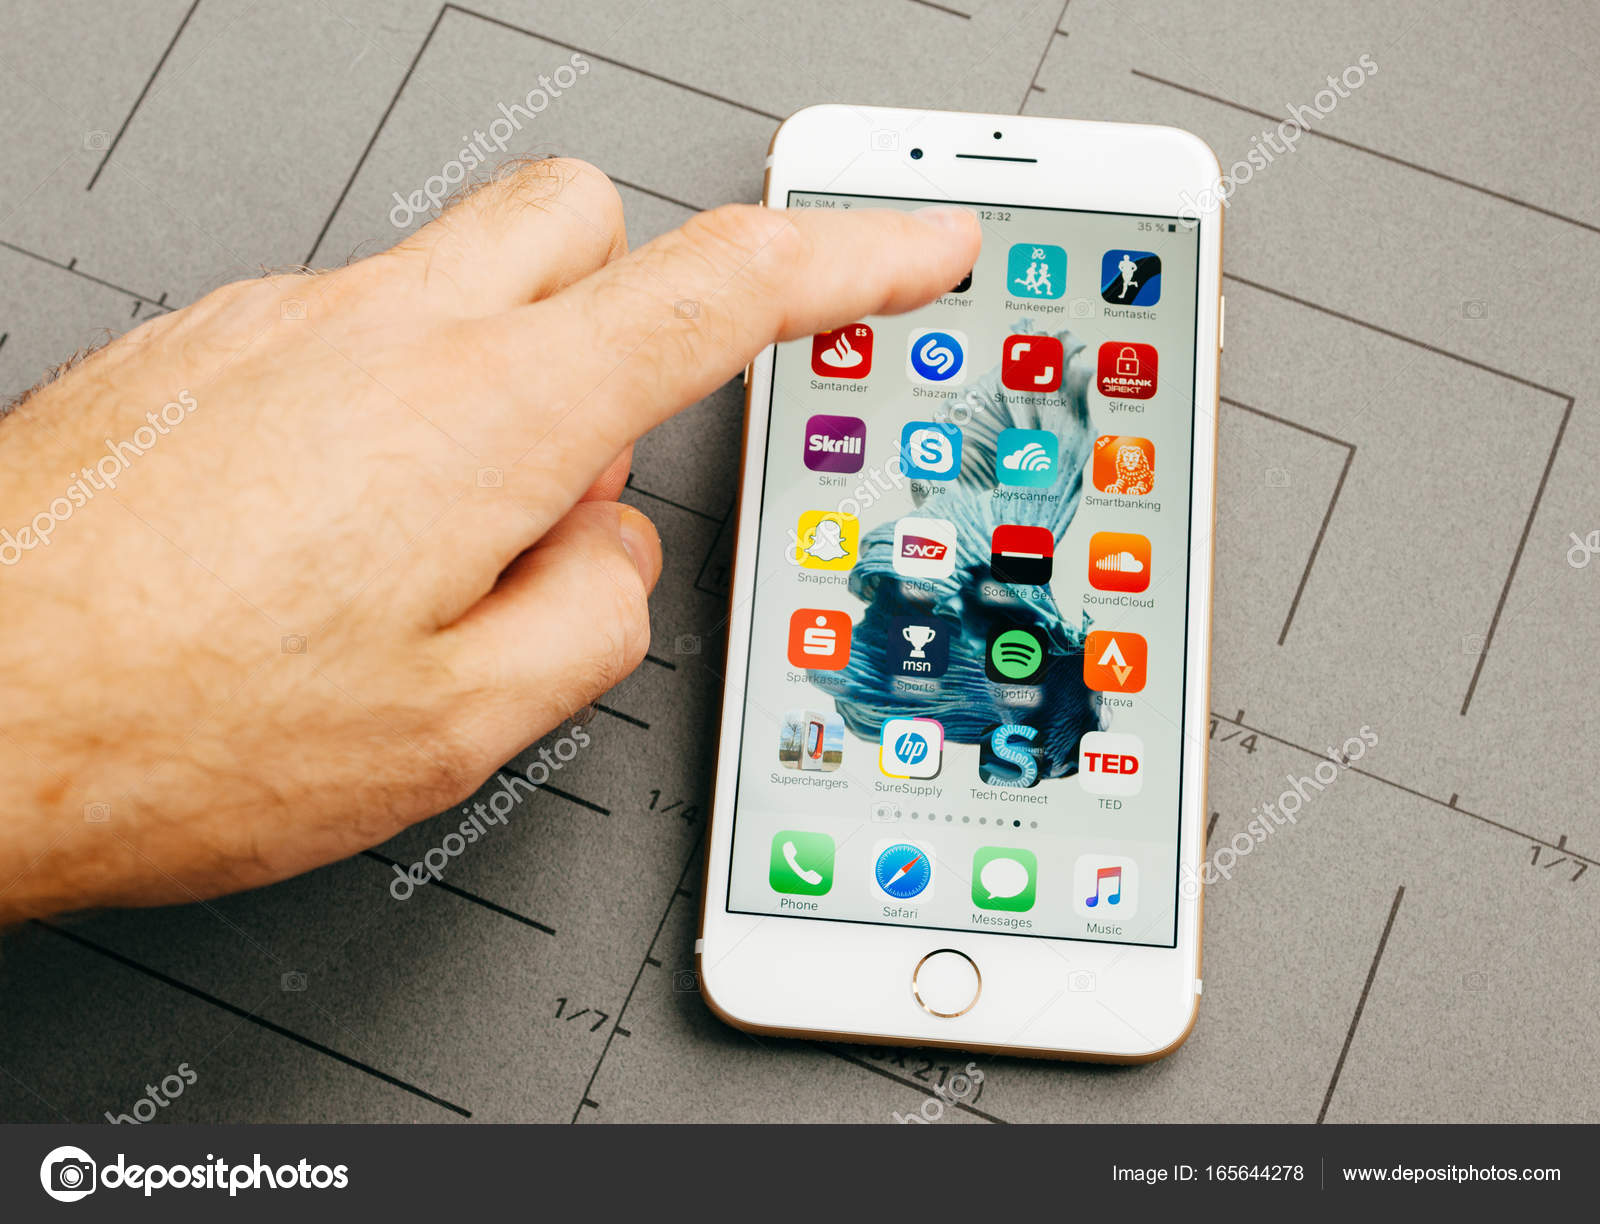 Обзор iphone 7 plus – плюсы и минусы яблочного гаджета